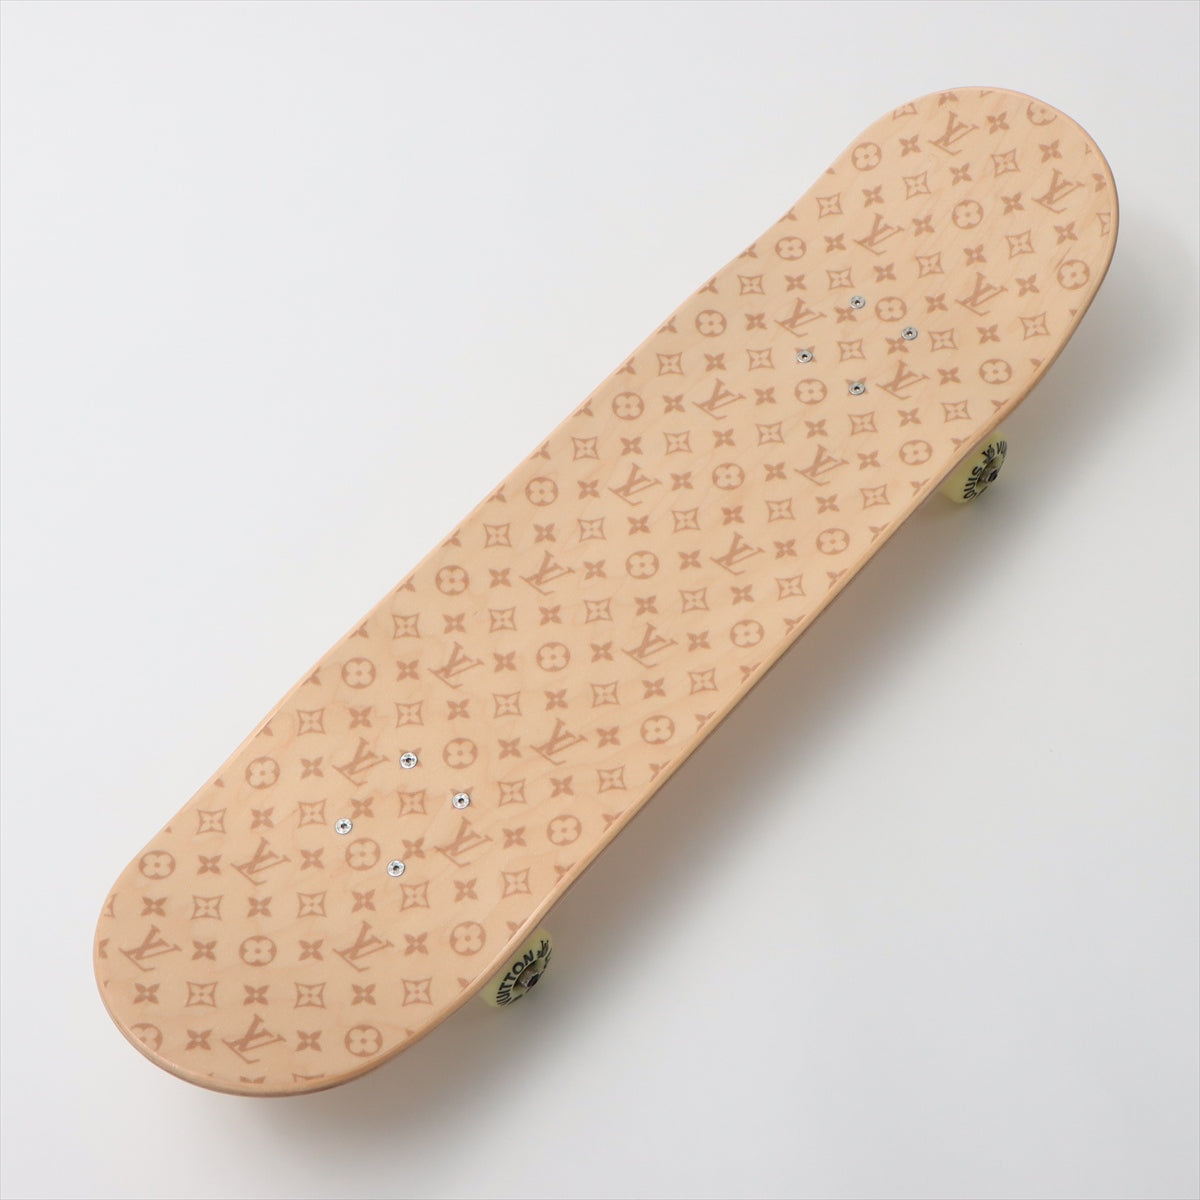 Louis Vuitton GI0637 KC0261 skateboarding Wood Beige Scratched Wears Losing luster